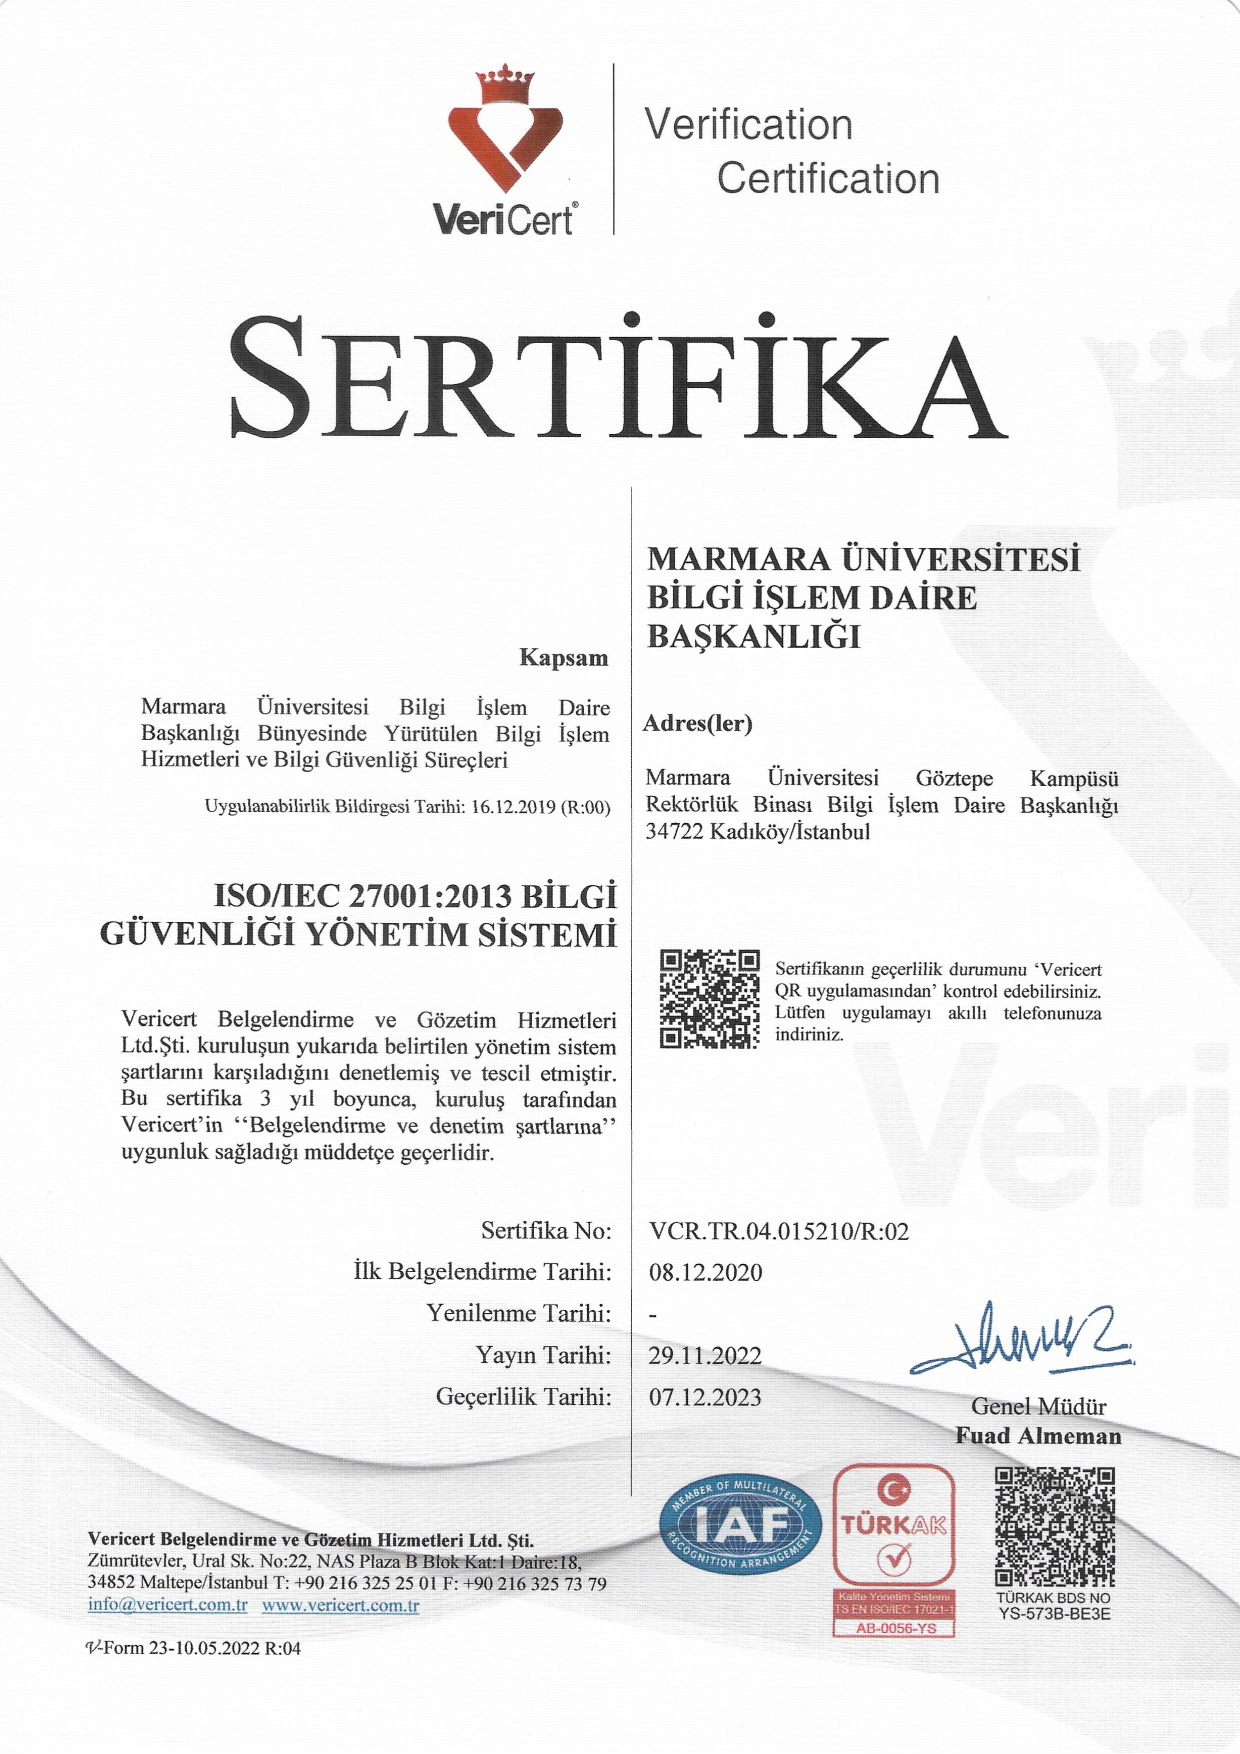 Sertifika-TR-2022_1.png (1.39 MB)